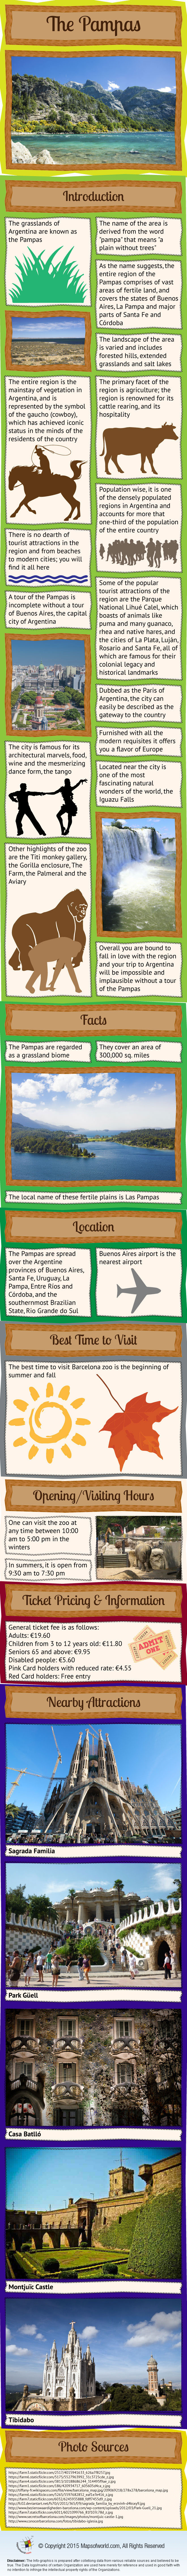 Barcelona Zoo Infographic